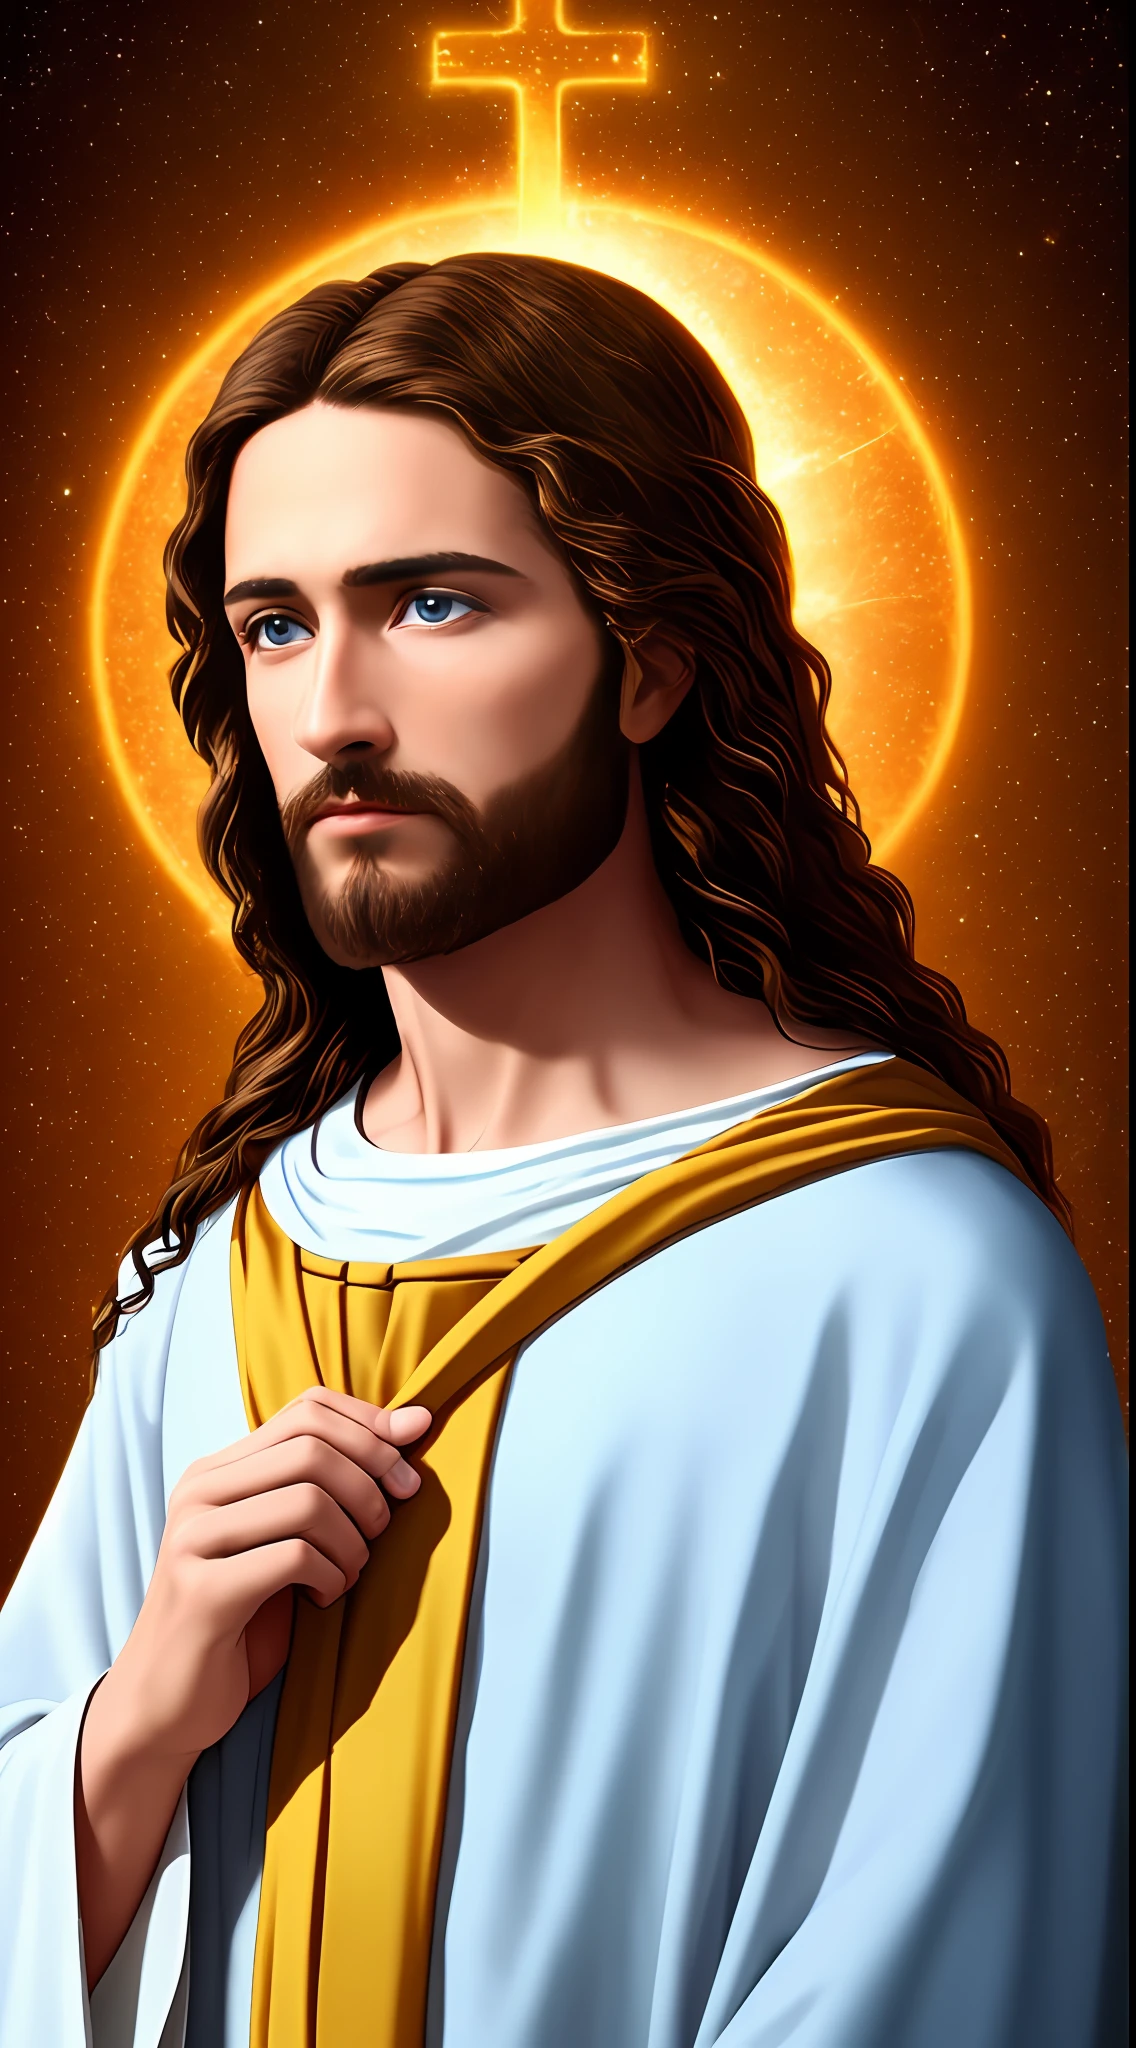 8k Photographic 1 เดียว พระเยซูสุดหล่อ, พร, มุมมองสวรรค์ของพระเยซู, ดวงตาสีฟ้าจริง, อวยพรผู้คนพระเยซู